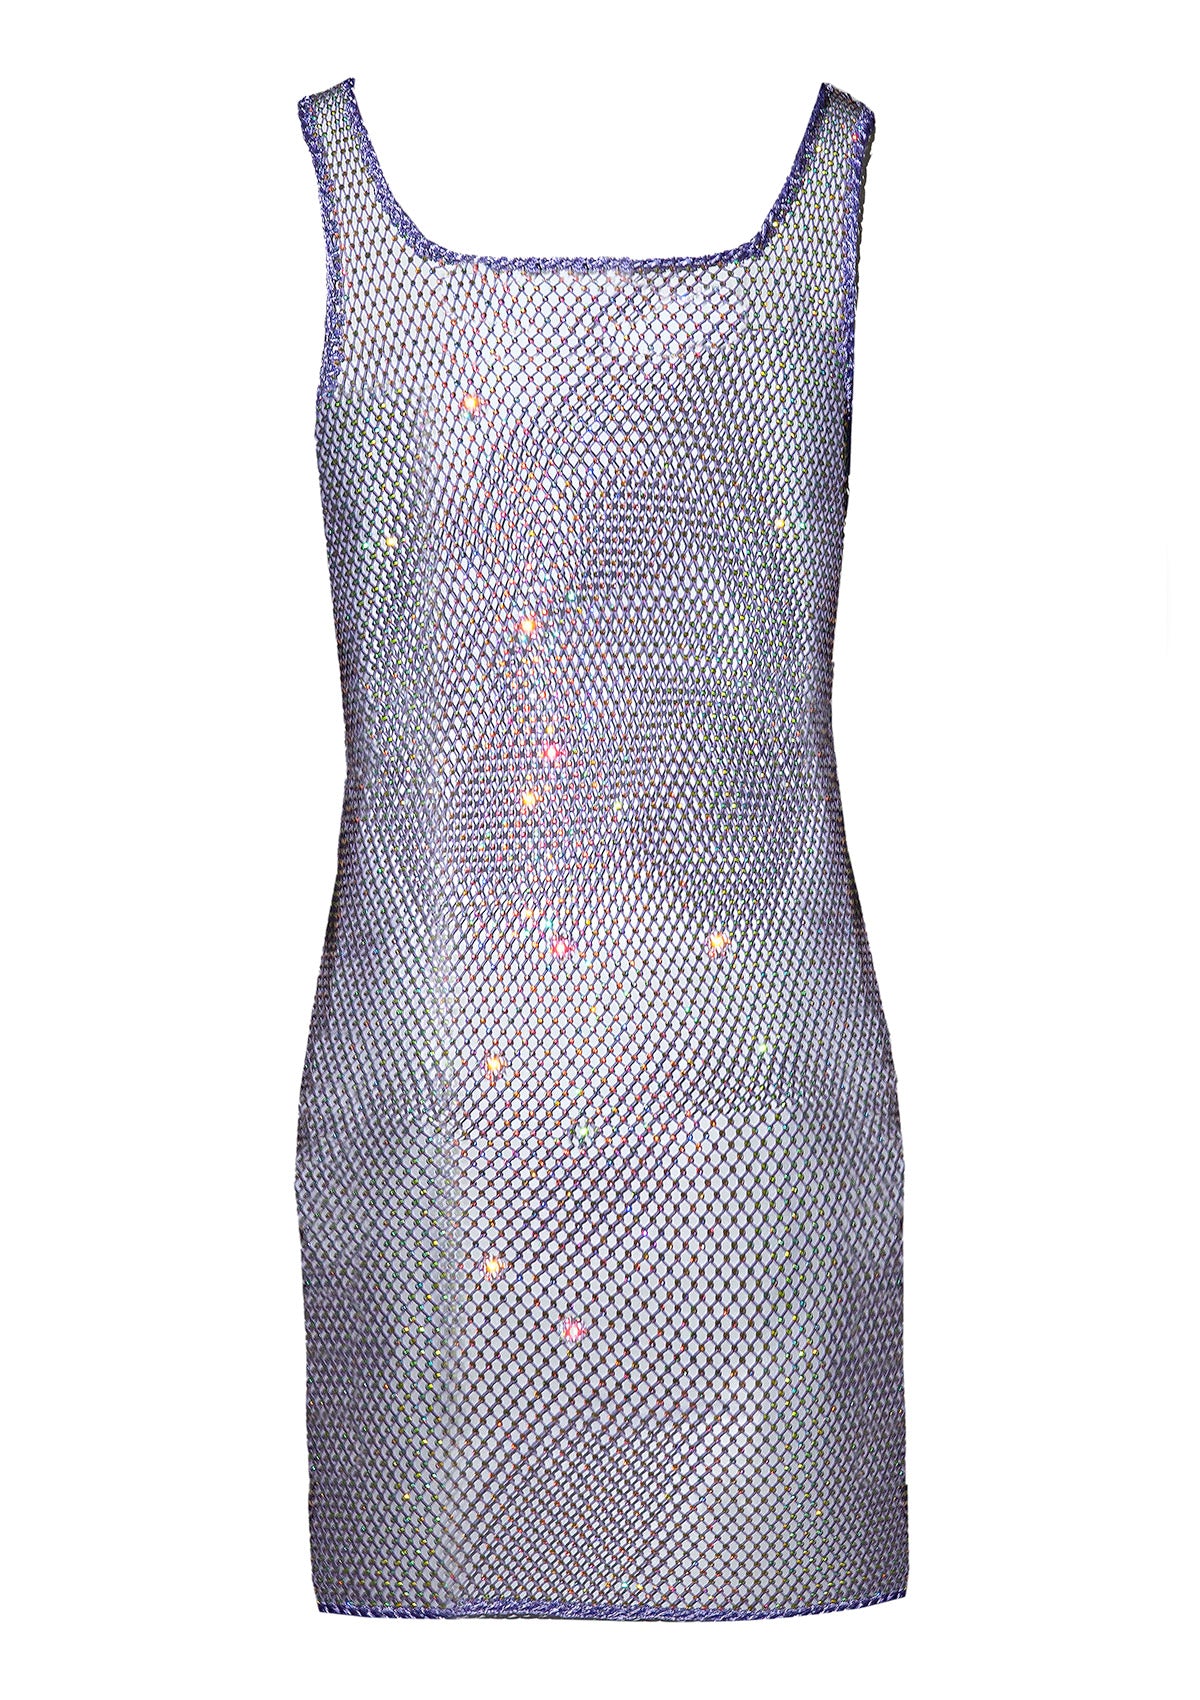 Crystal Dress Liu Lilac с ръчно наплитане